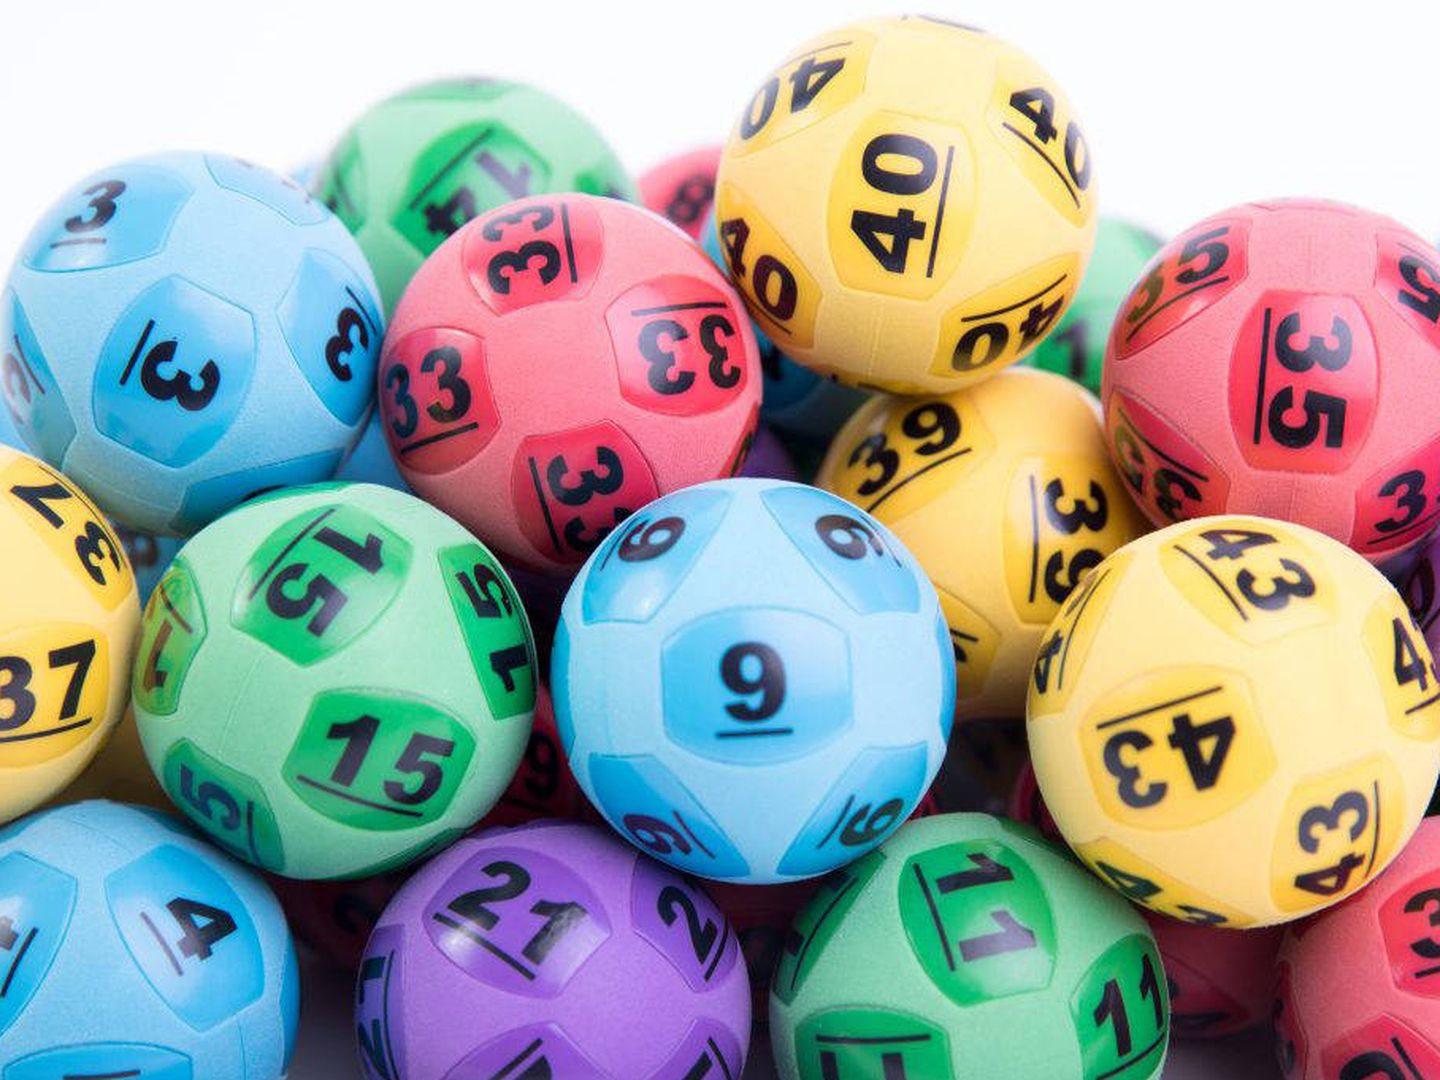 La mayoría de los sorteos de lotería en Estados Unidos no usan bolas, sino un sistema informático